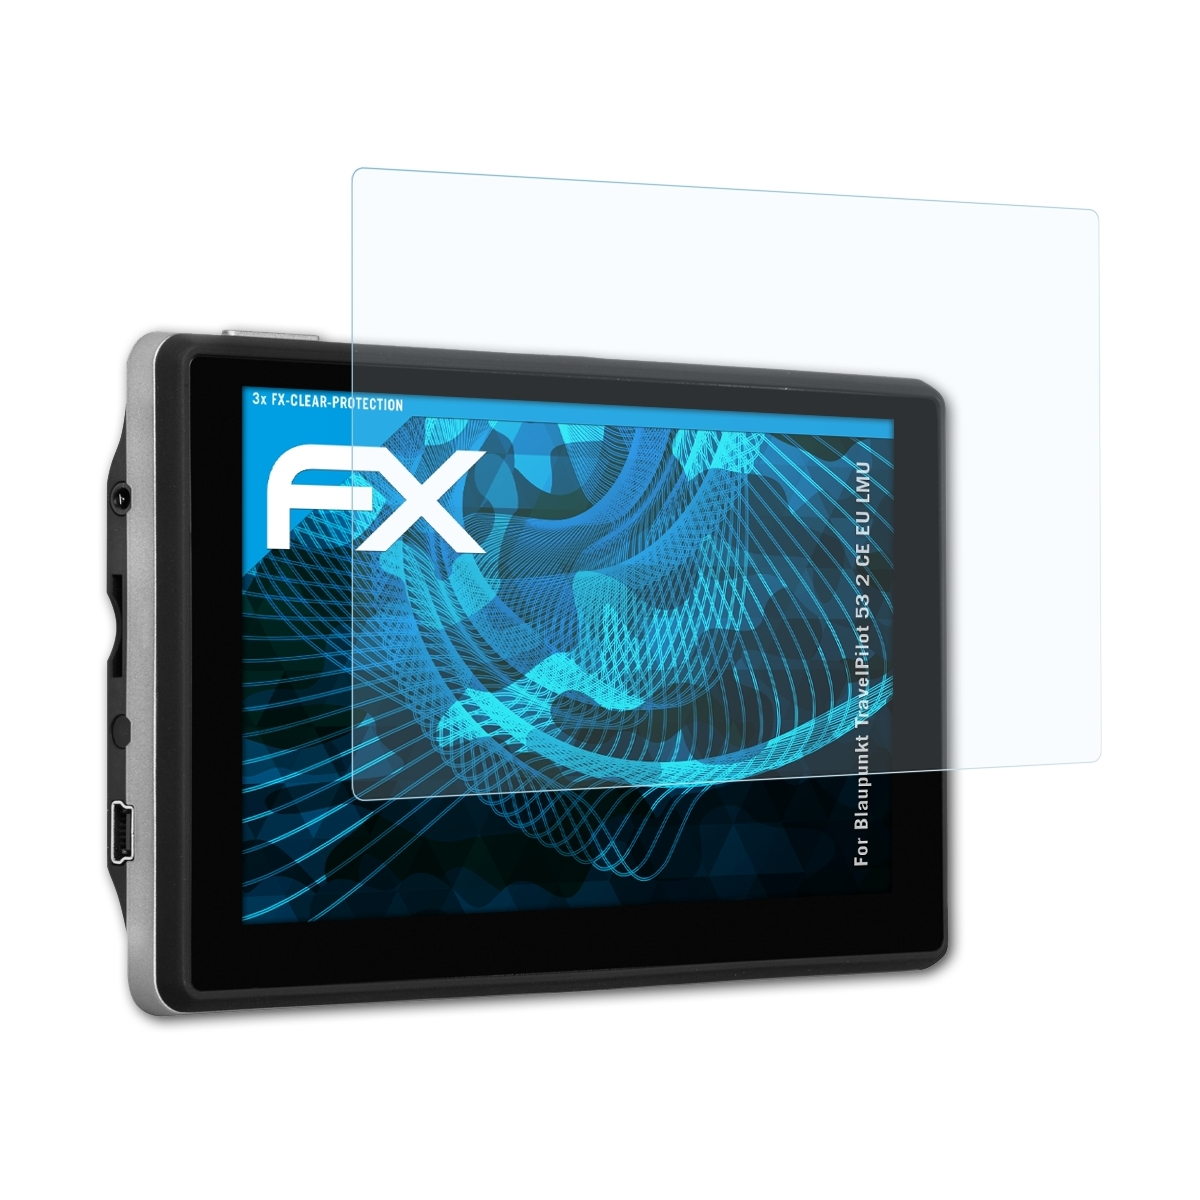 ATFOLIX FX-Clear Displayschutz(für TravelPilot CE 53 Blaupunkt LMU) 3x 2 EU